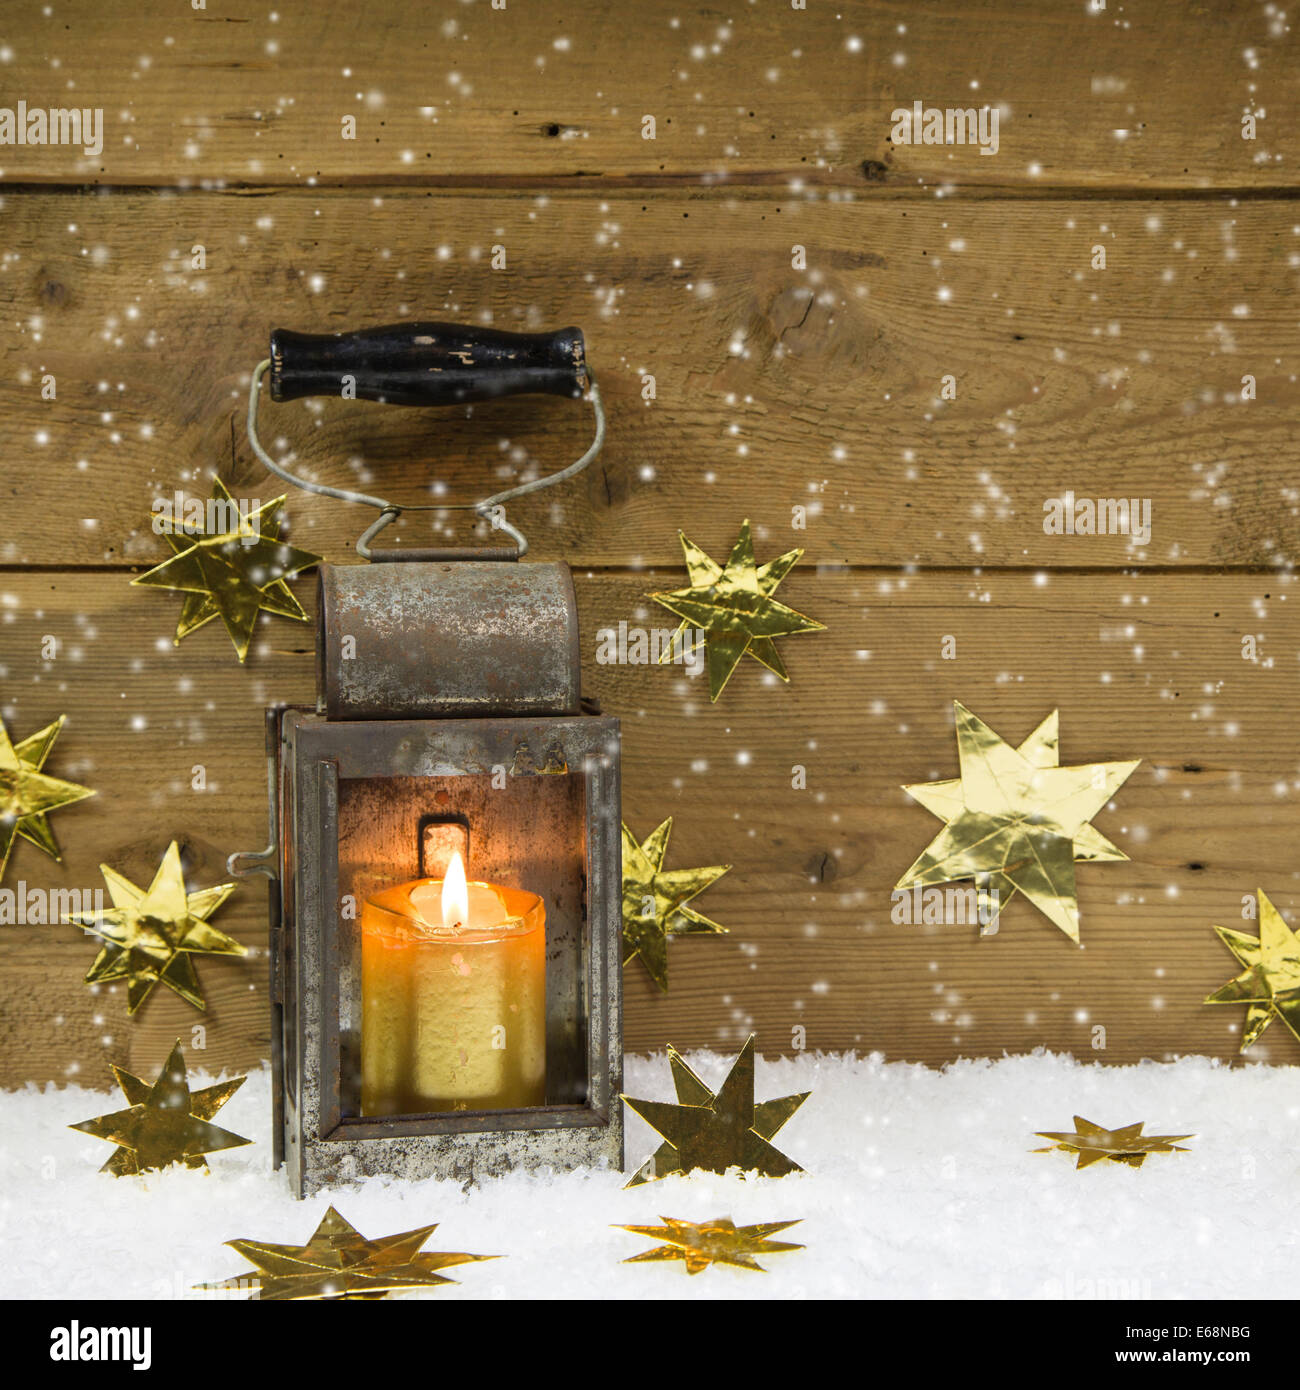 Sfondi Natalizi Lanterna.Natale Umore Vecchio Stile Rustico E Antico Lanterna Su Un Sfondo Innevato Foto Stock Alamy